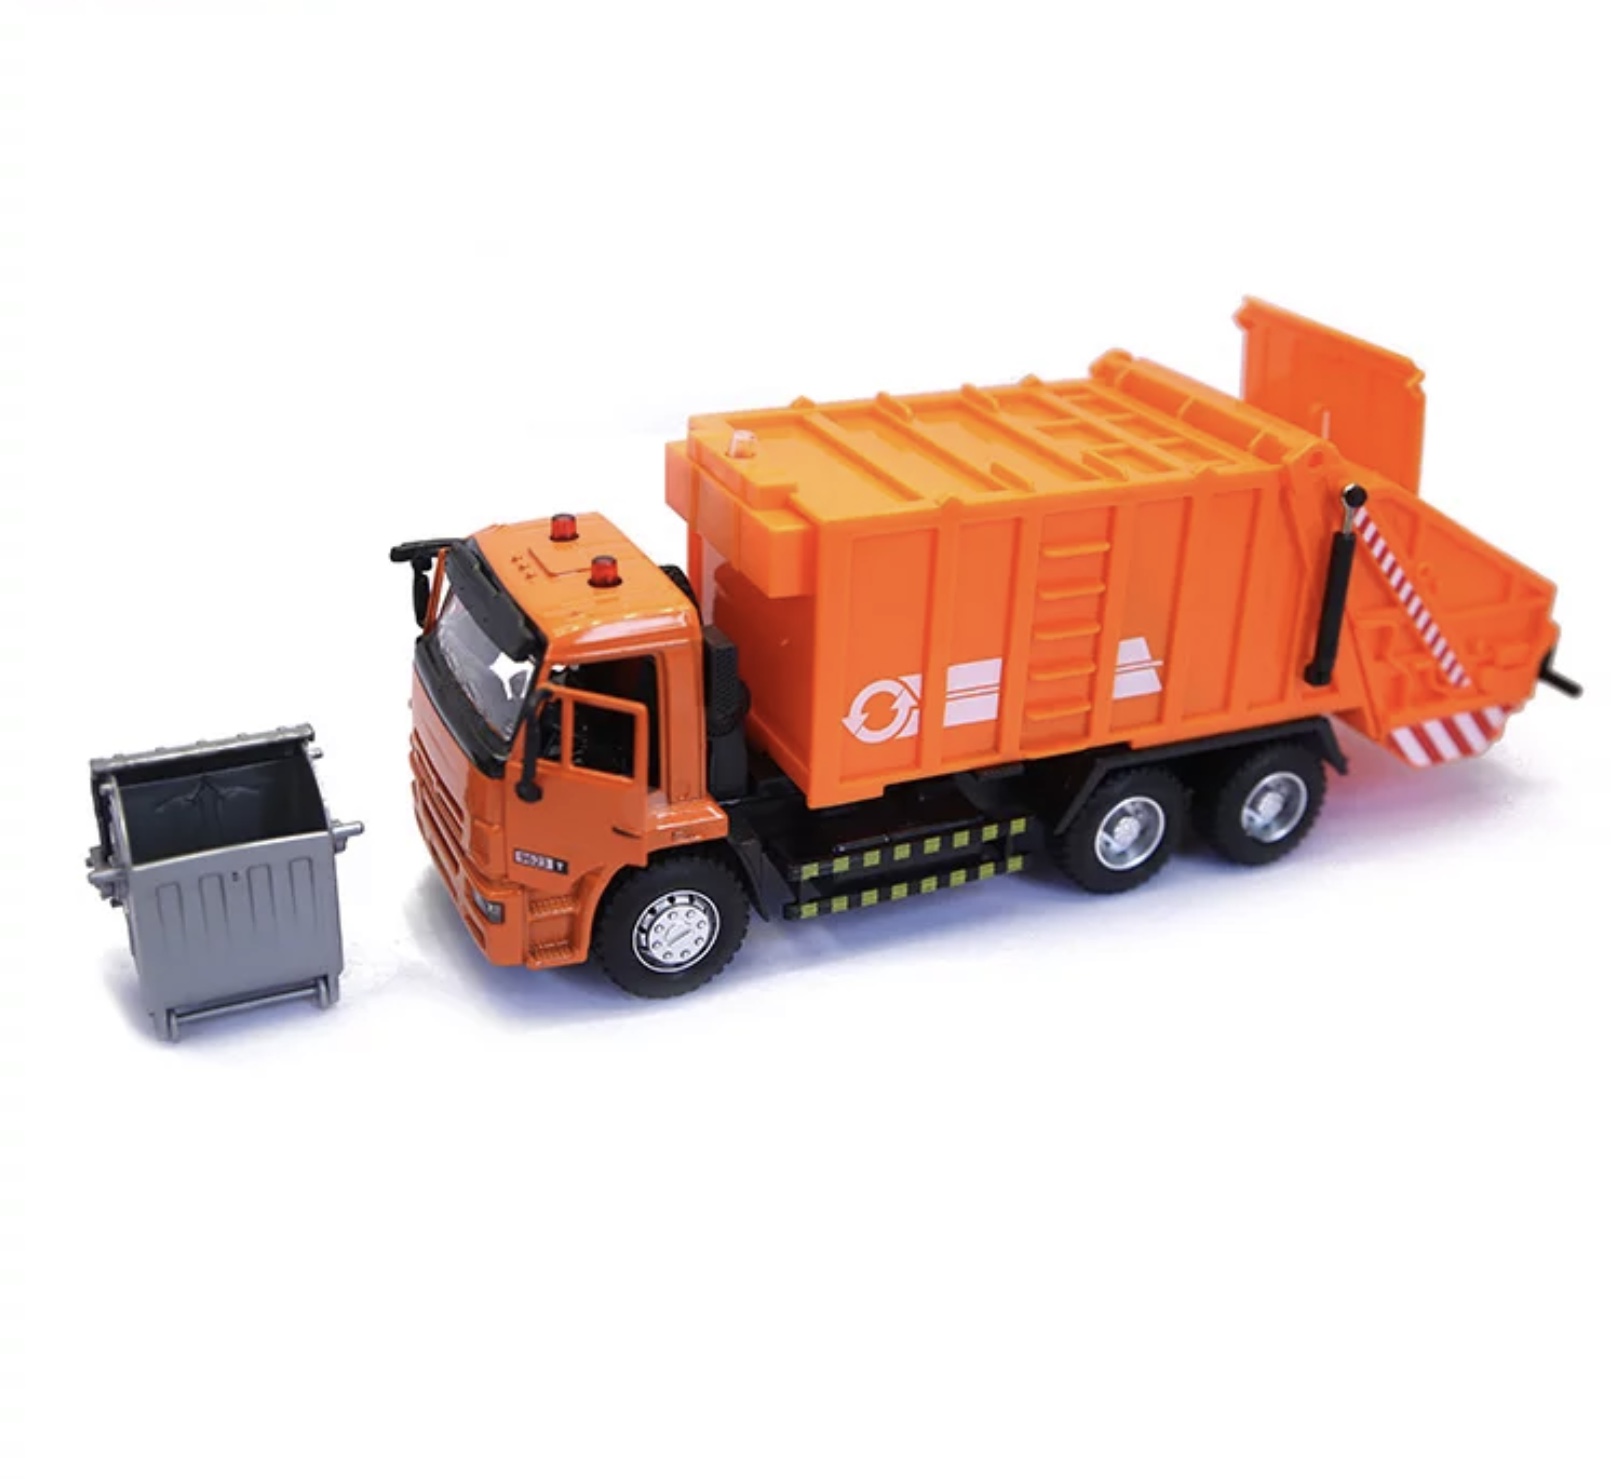 Acest autocamion pentru gunoi este utilizat în operațiune de corectare și sortare a gunoiului ciudat din mașina de gunoi este din plastic având și un coș de colectare a gunoiului un produs foarte rezistent